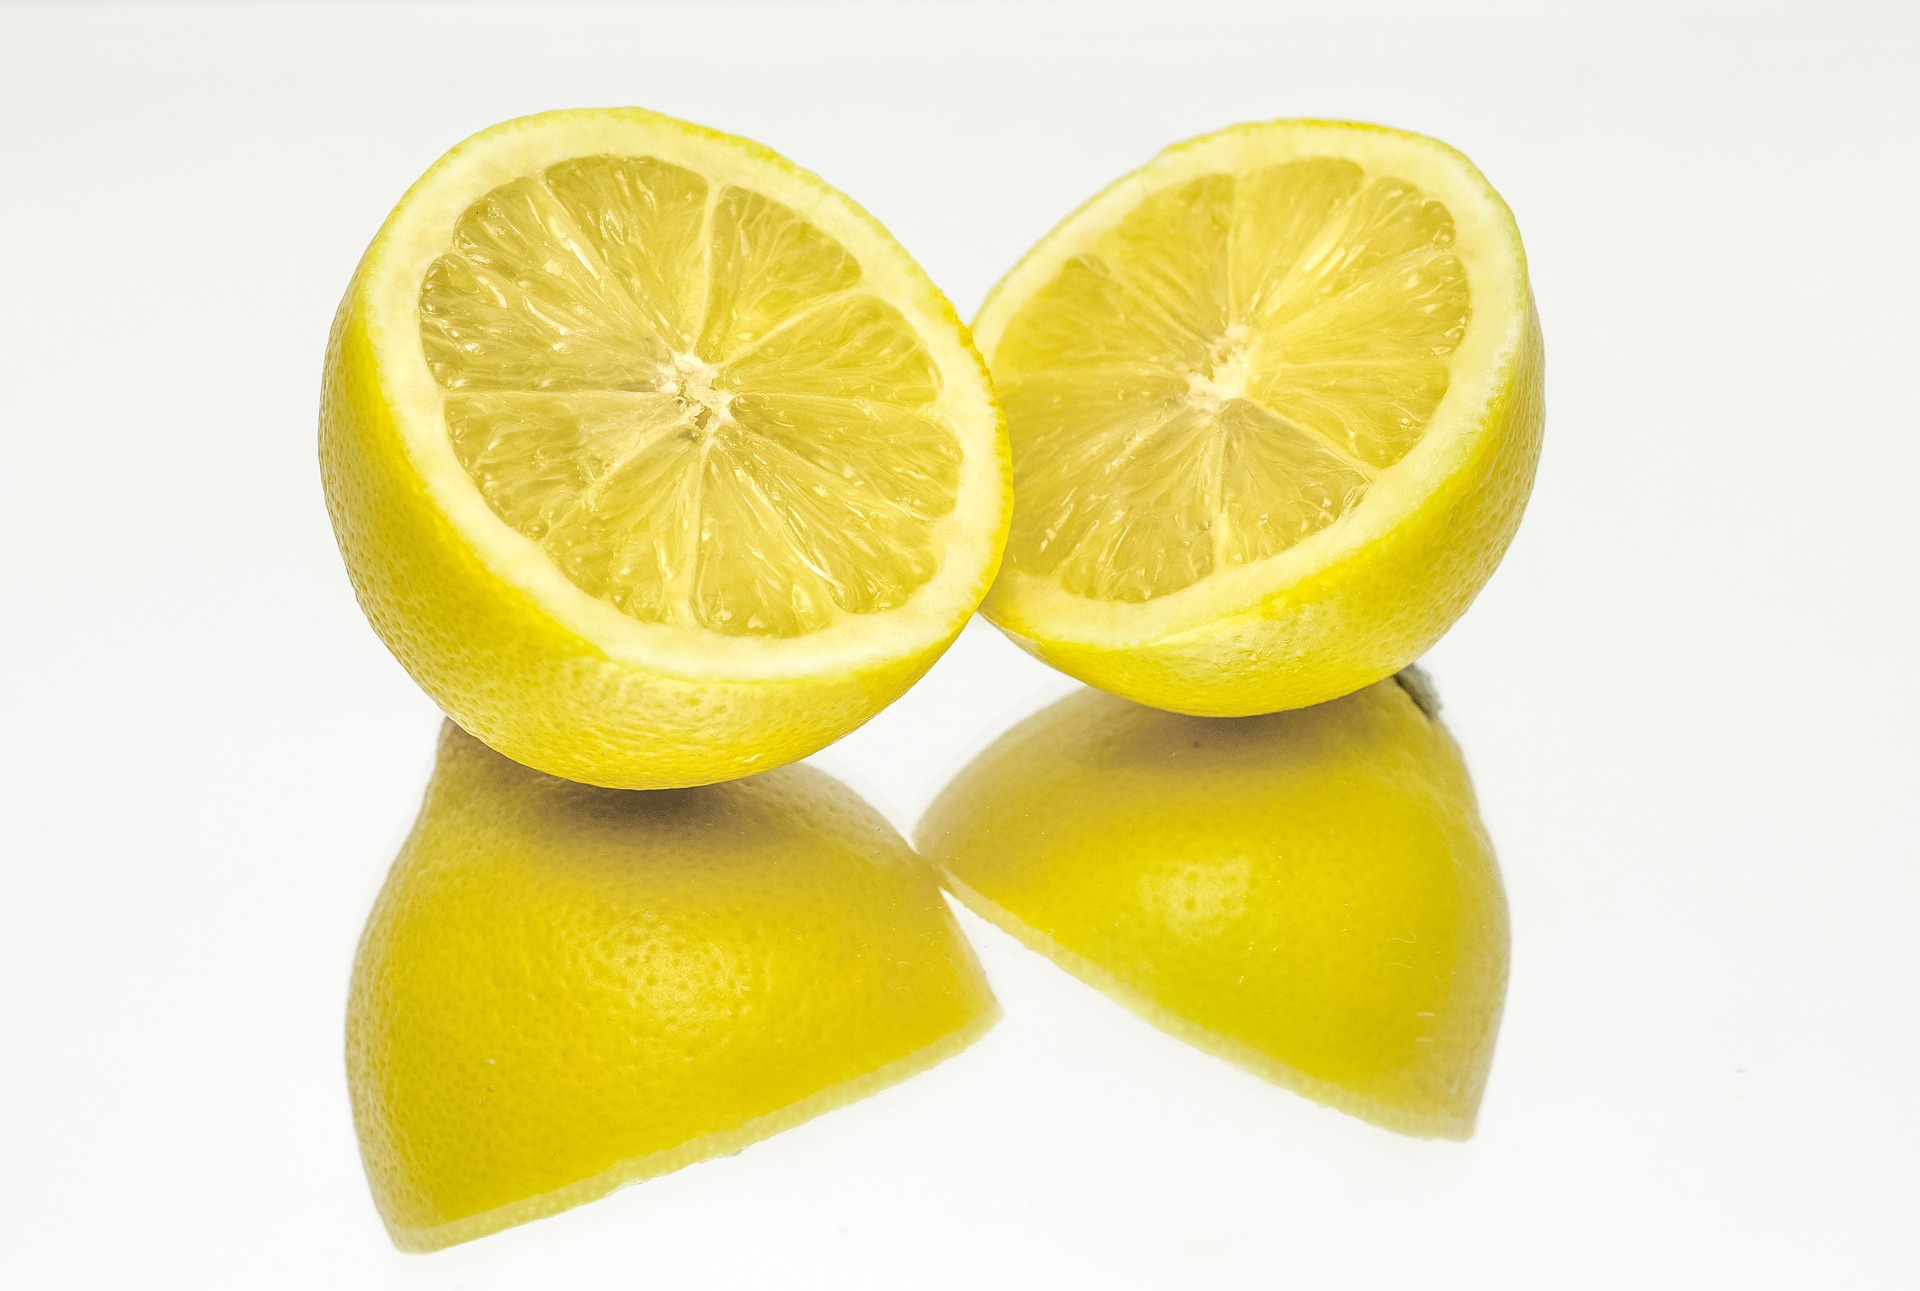 le citron néttoie la peau grasse et lutte contre l'acné